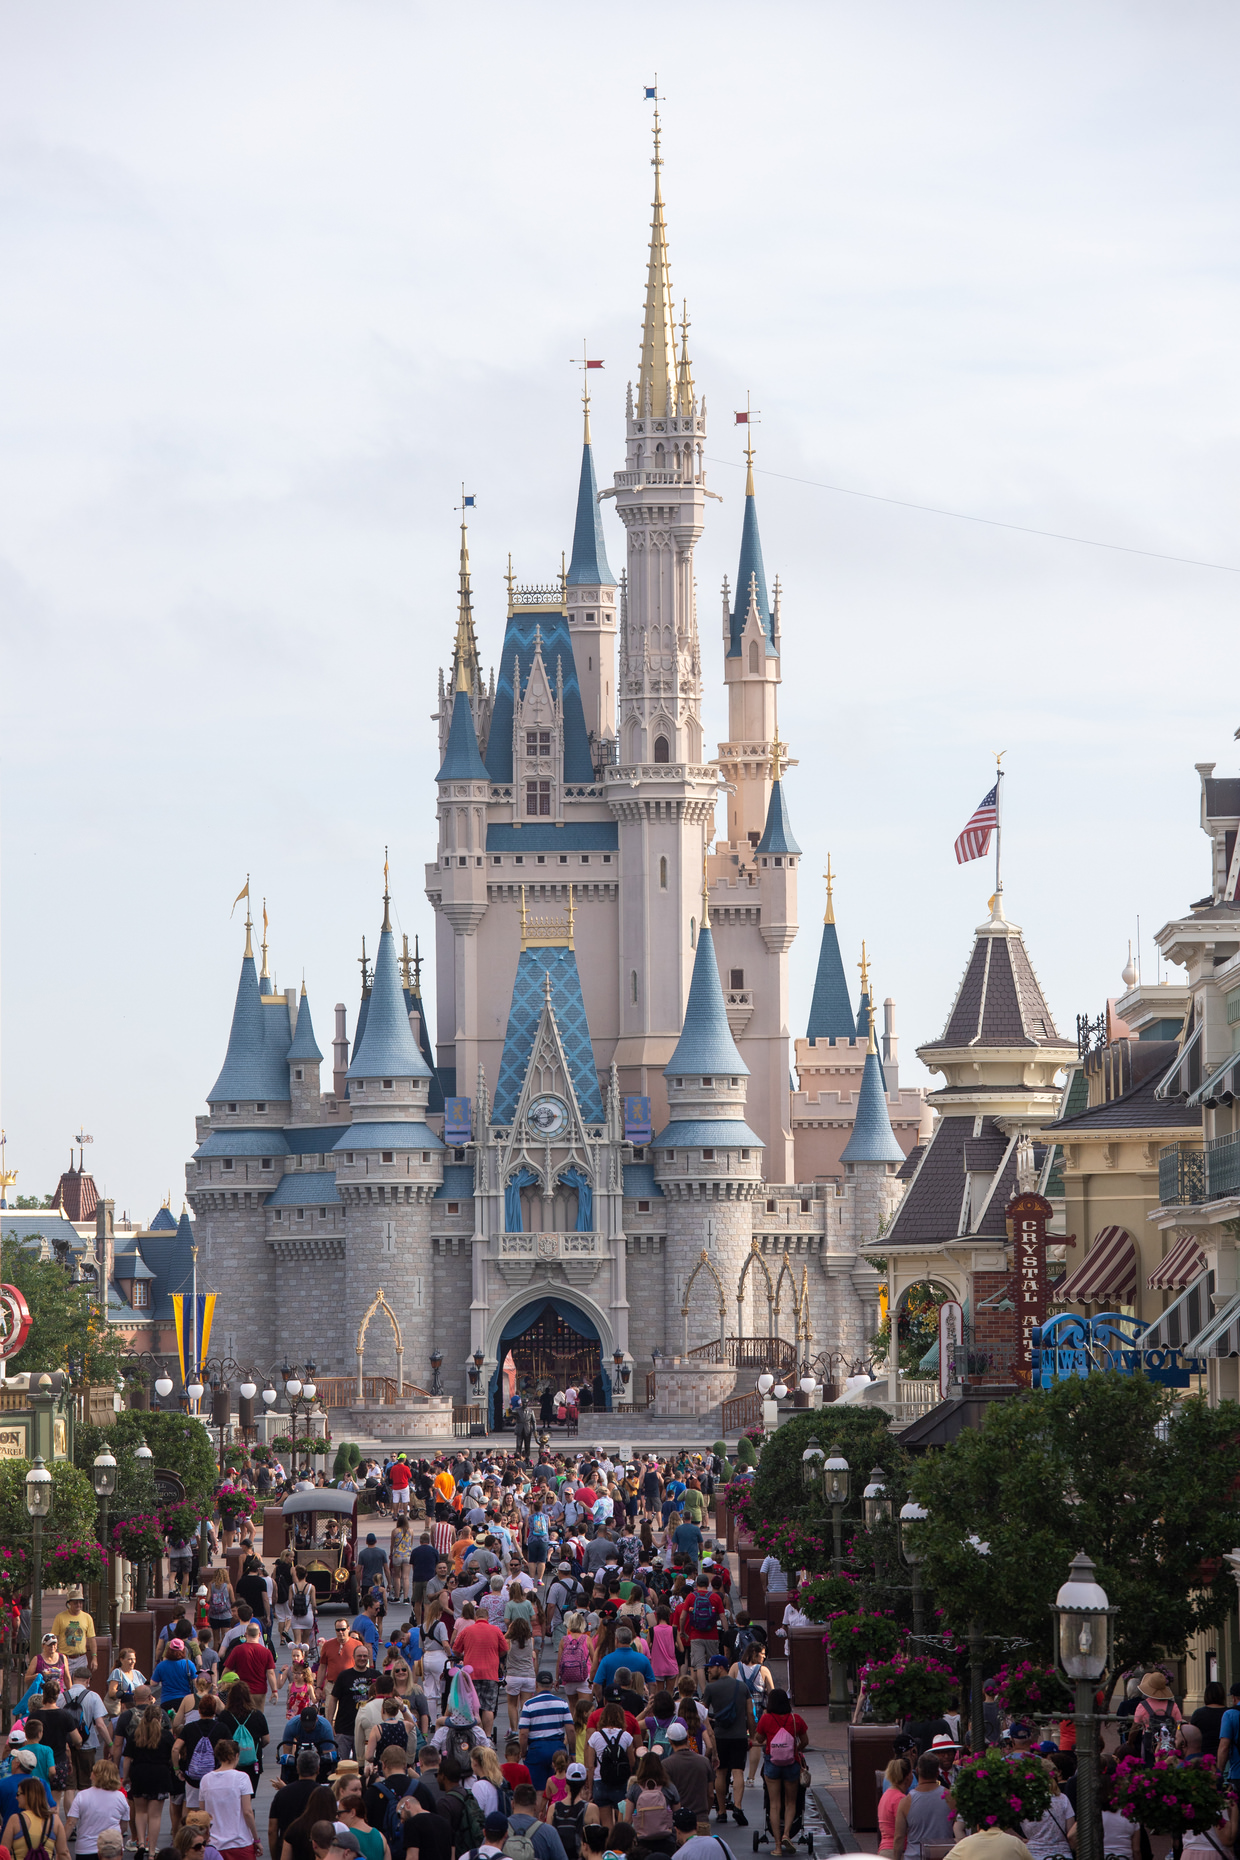 Disney’s famous Cinderella castle